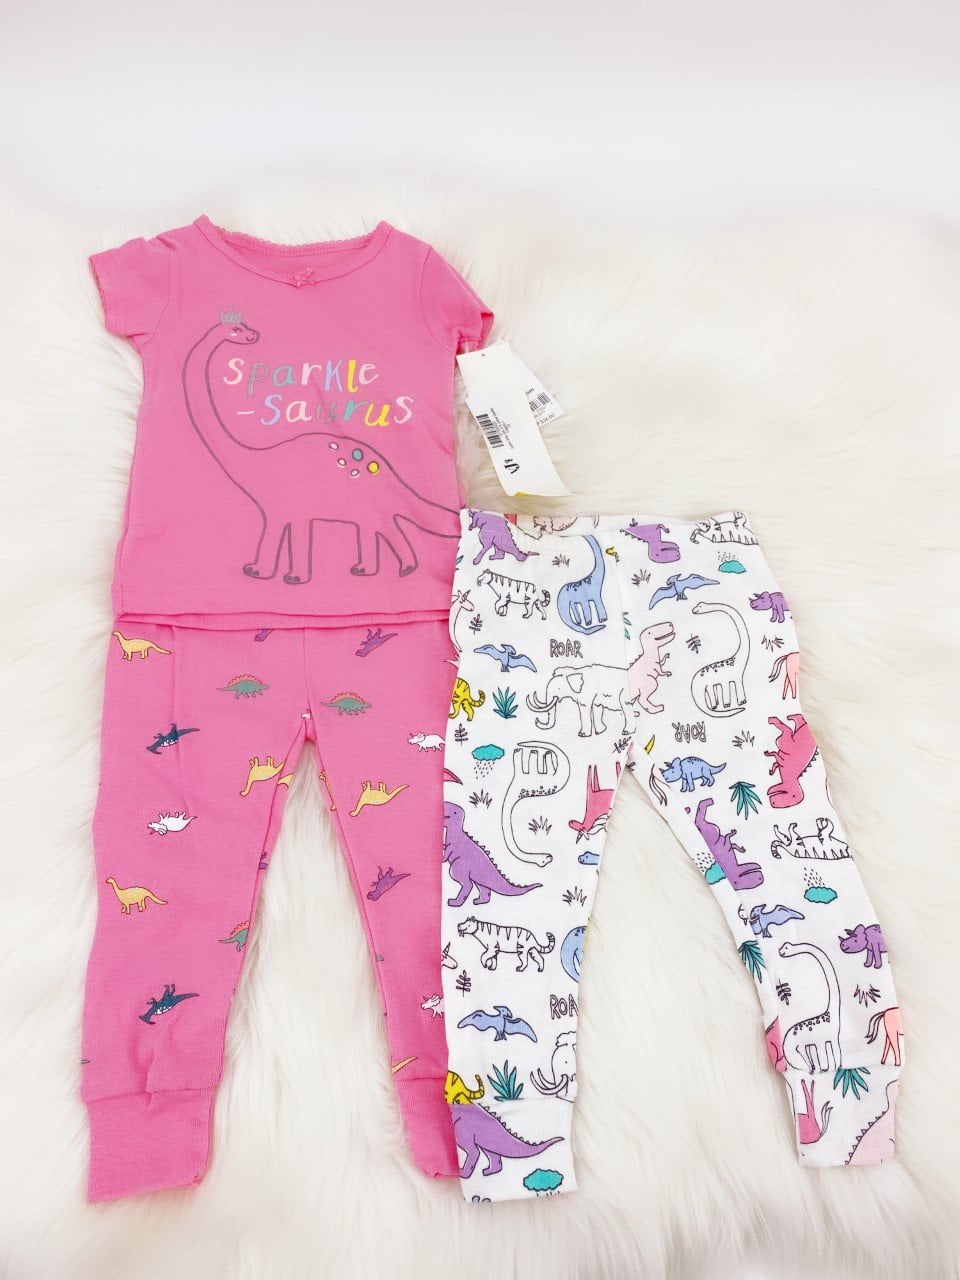 有名ブランド Posh Peanut Baby Pajamas Set - Toddler Sleepers Little Girl Clothes  - Kids Two Piece PJ - Soft Viscose Bamboo (French Gray, 0-3 Months)【 -  plazamedspa.com